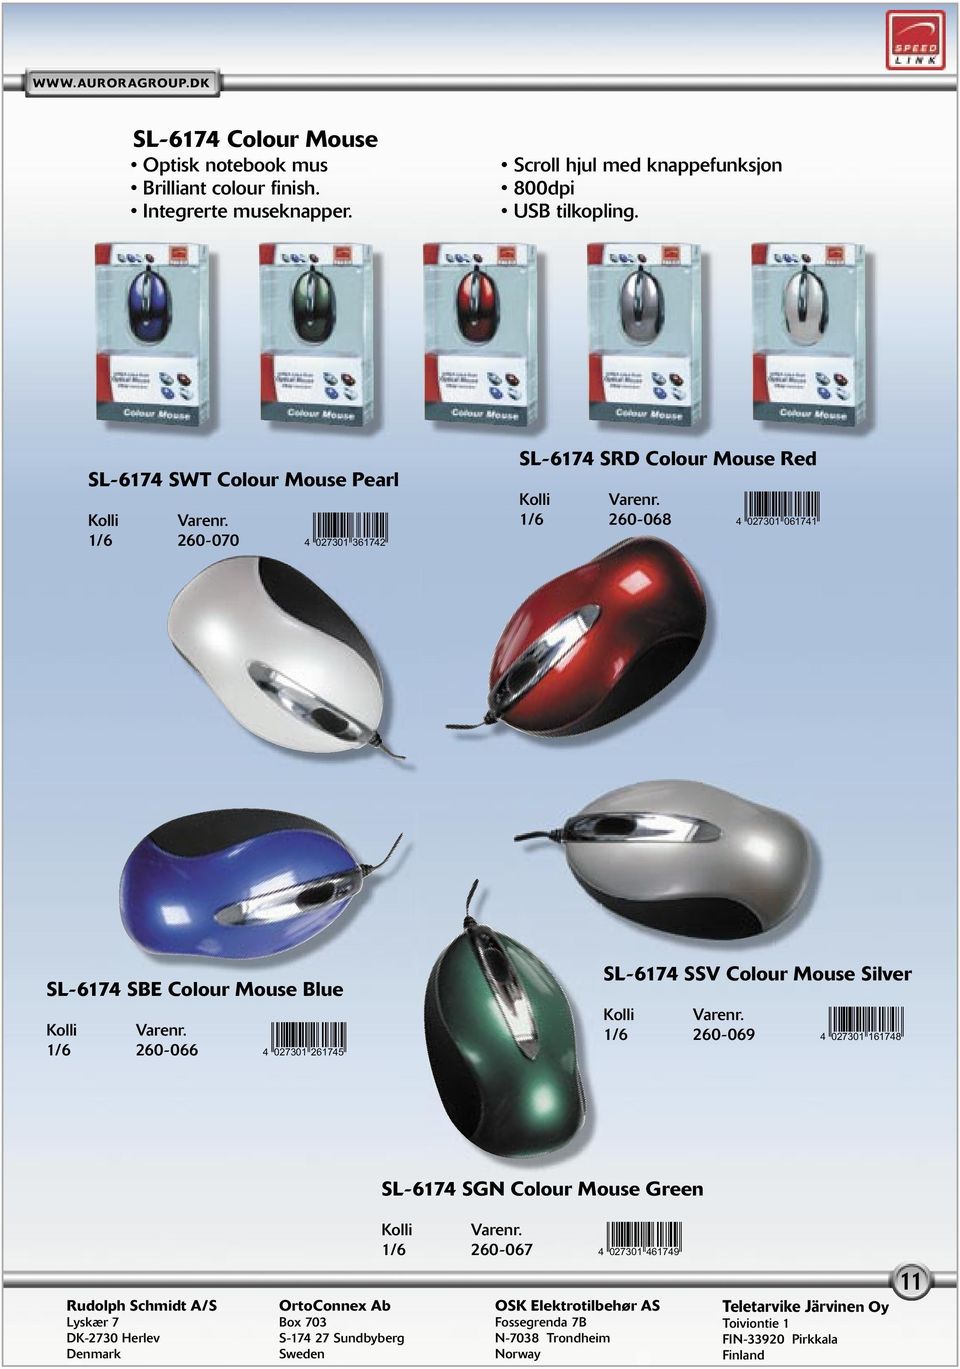 SL-6174 SWT Colour Mouse Pearl 1/6 260-070 4<ANHDLM=dgbhec> SL-6174 SRD Colour Mouse Red 1/6 260-068